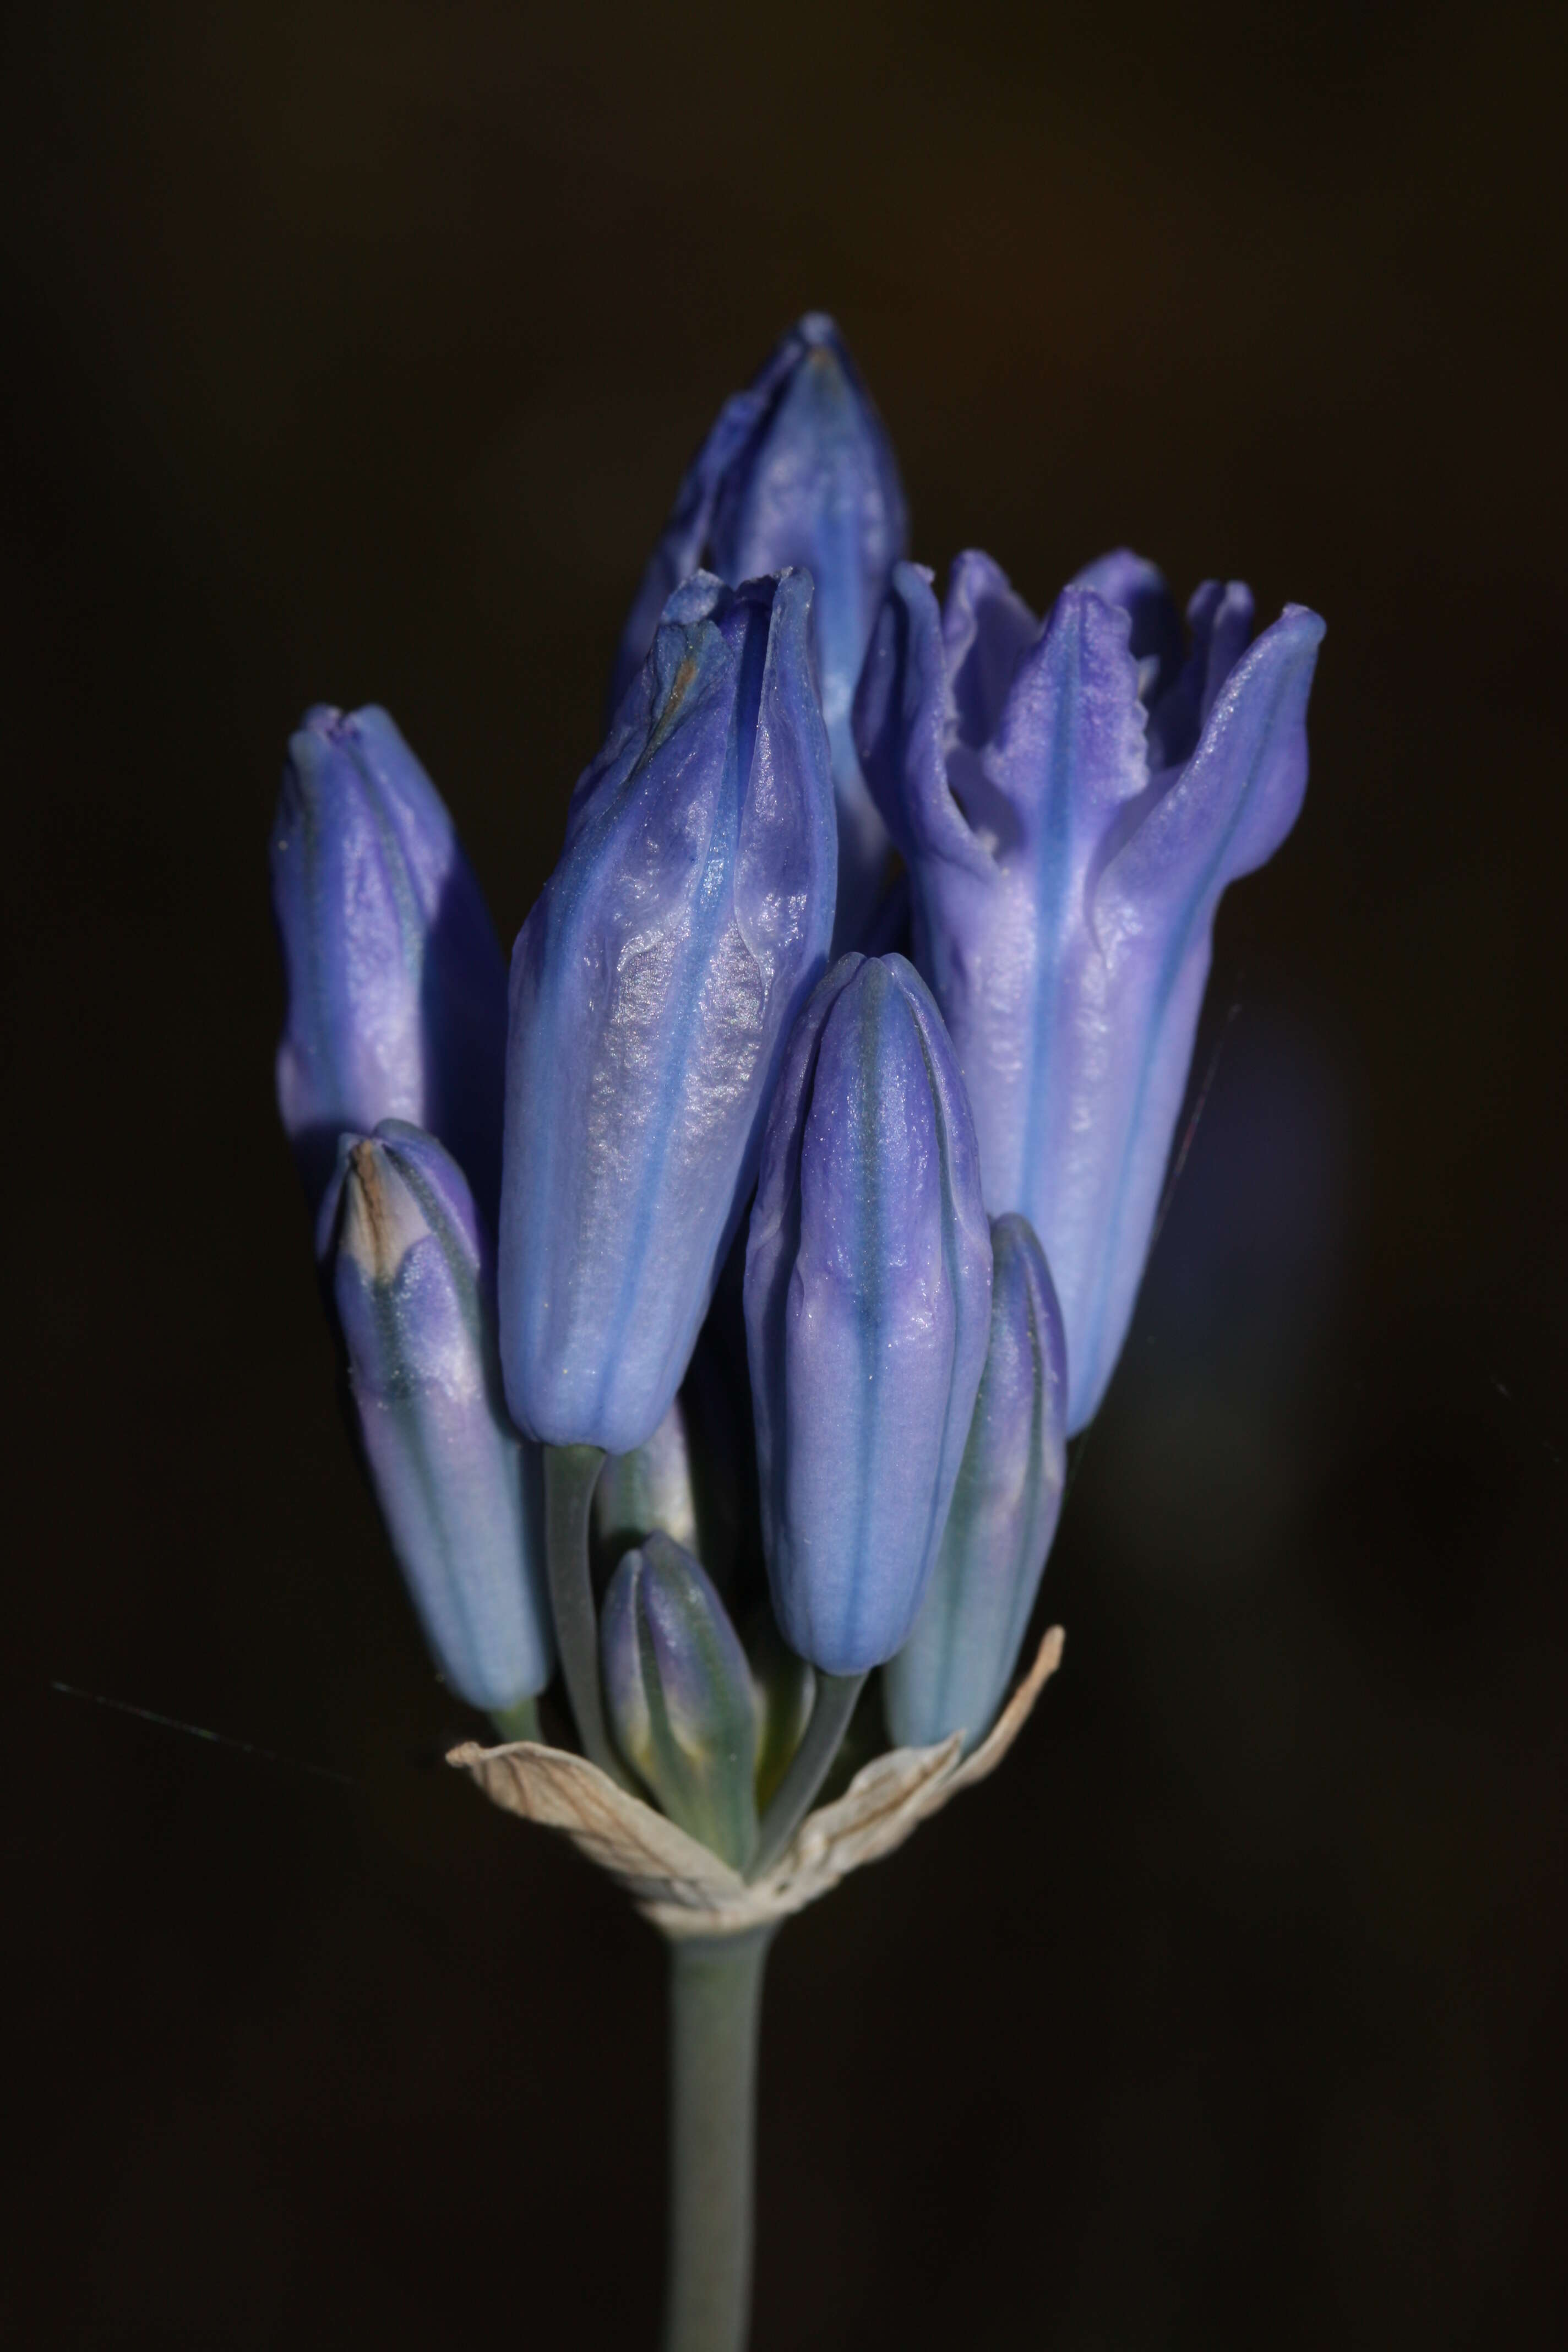 Image of largeflower triteleia